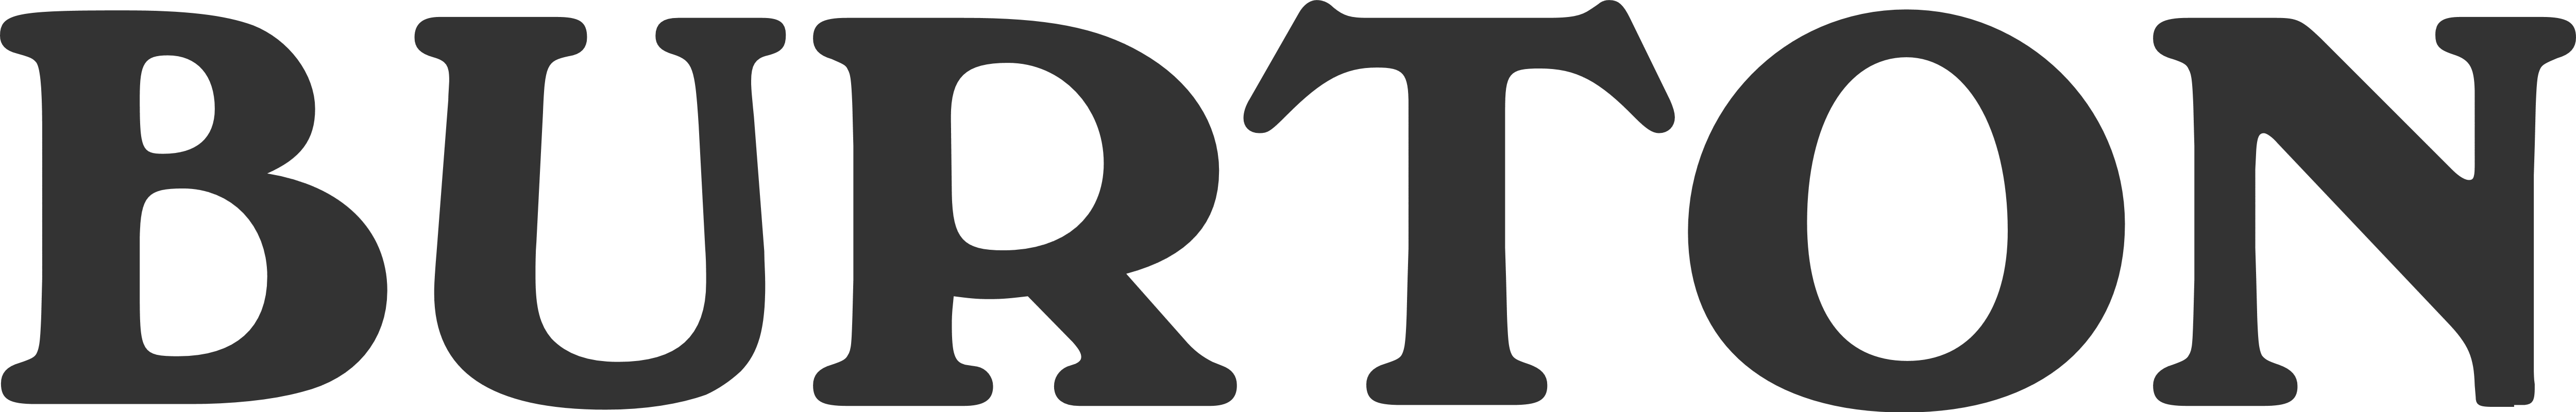 Burton – Logos Download